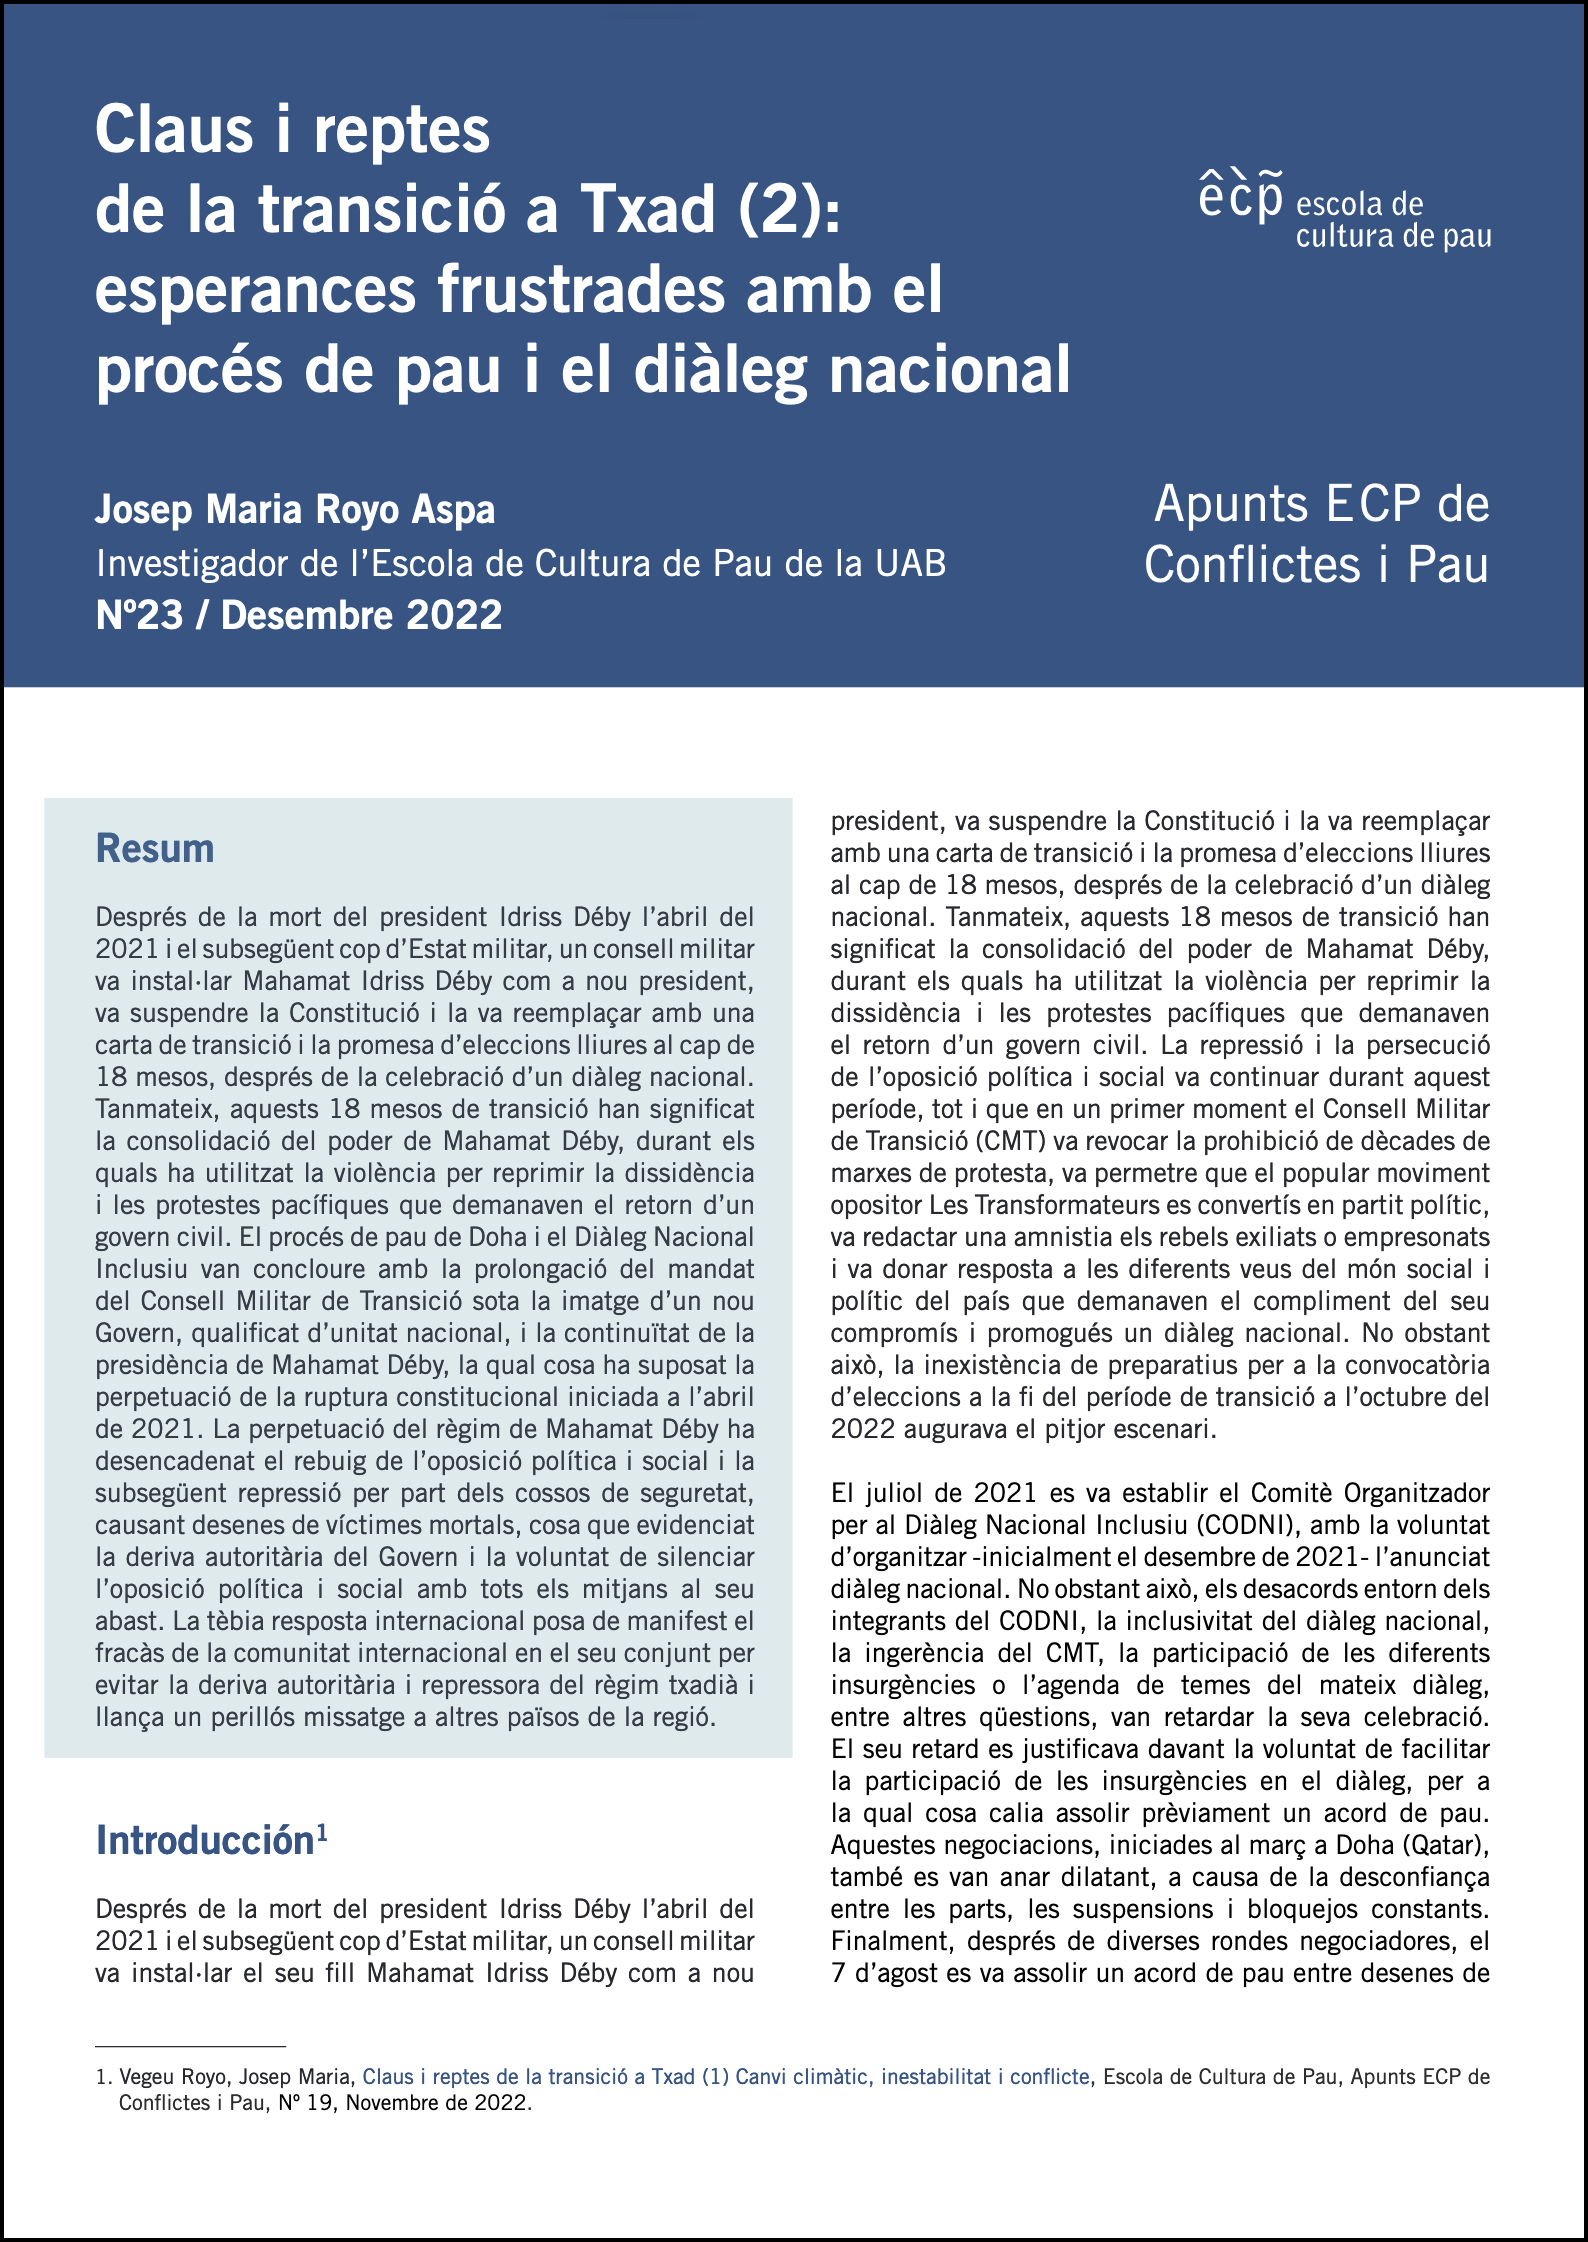 Apunts ECP de Conflictes i Pau, Núm.23